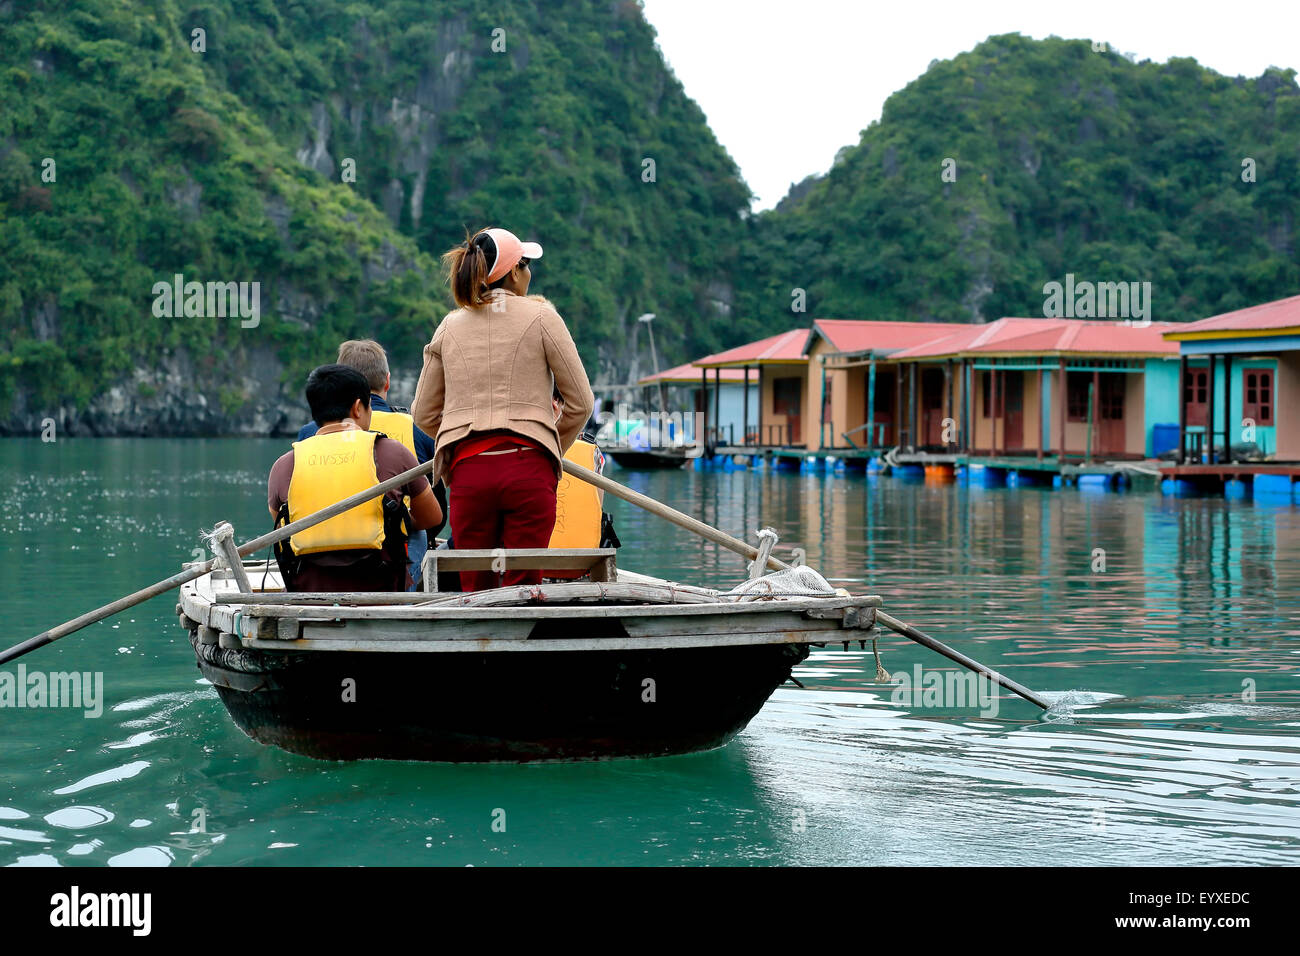 Les touristes sur des bateaux à rames et des maisons flottantes, village de pêcheurs de Vung Vieng, Ha Long Bay, Secteur de Bai Tu Long, Vietnam Banque D'Images